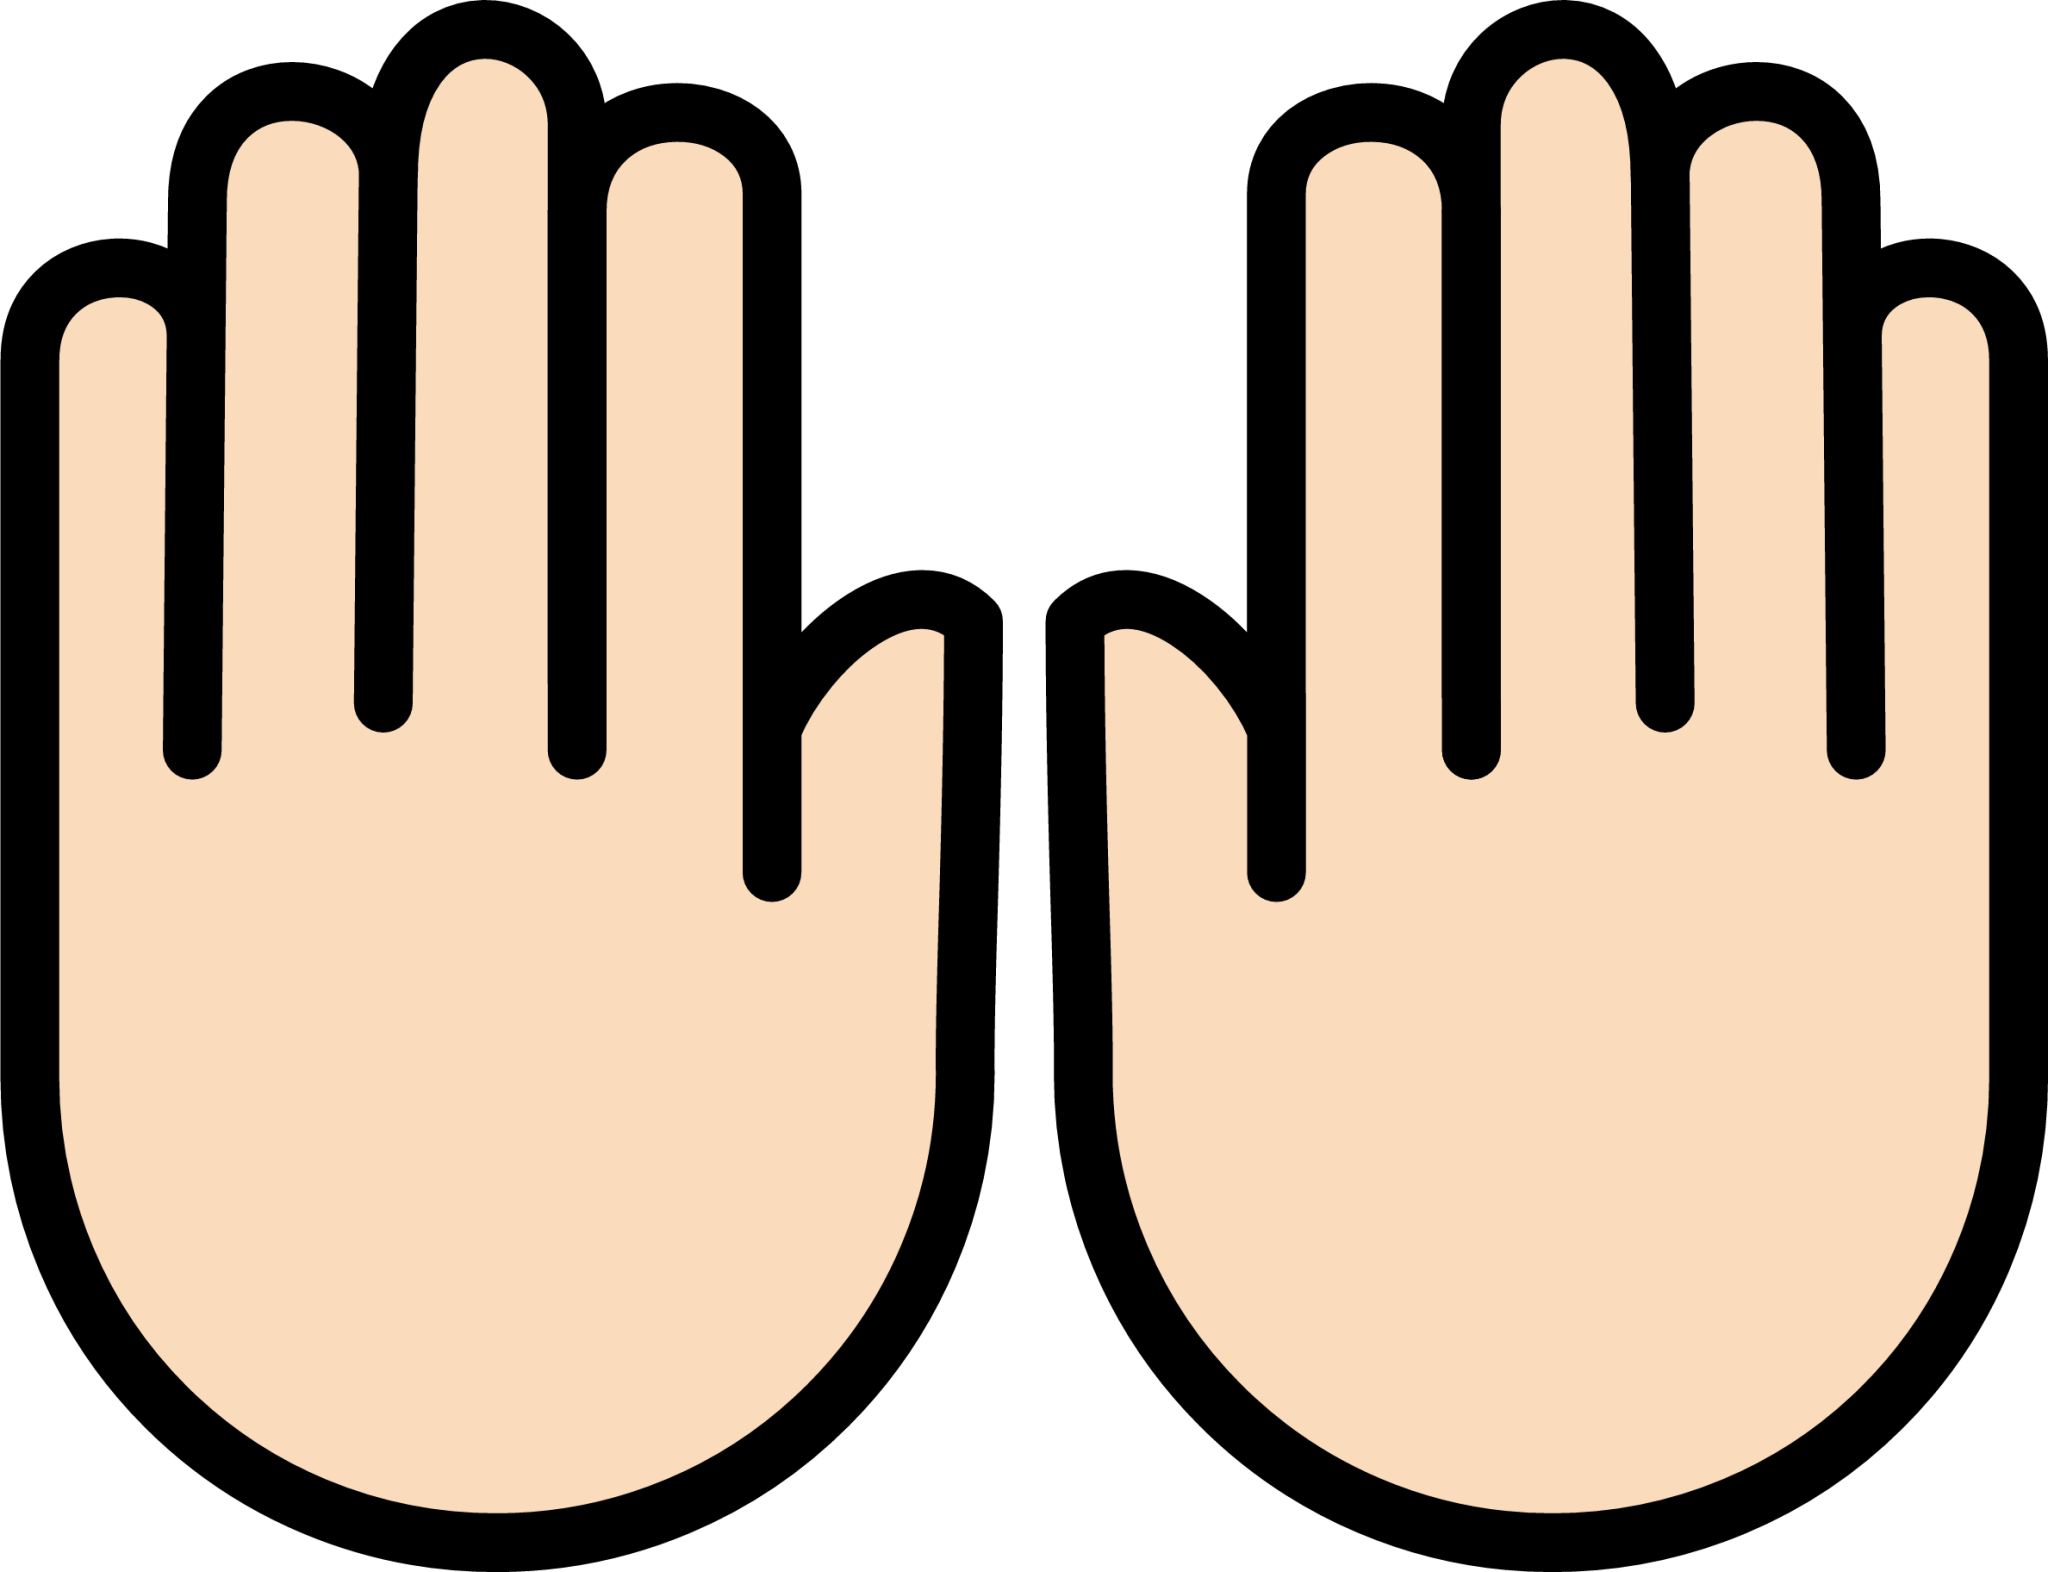 raising hands: light skin tone emoji